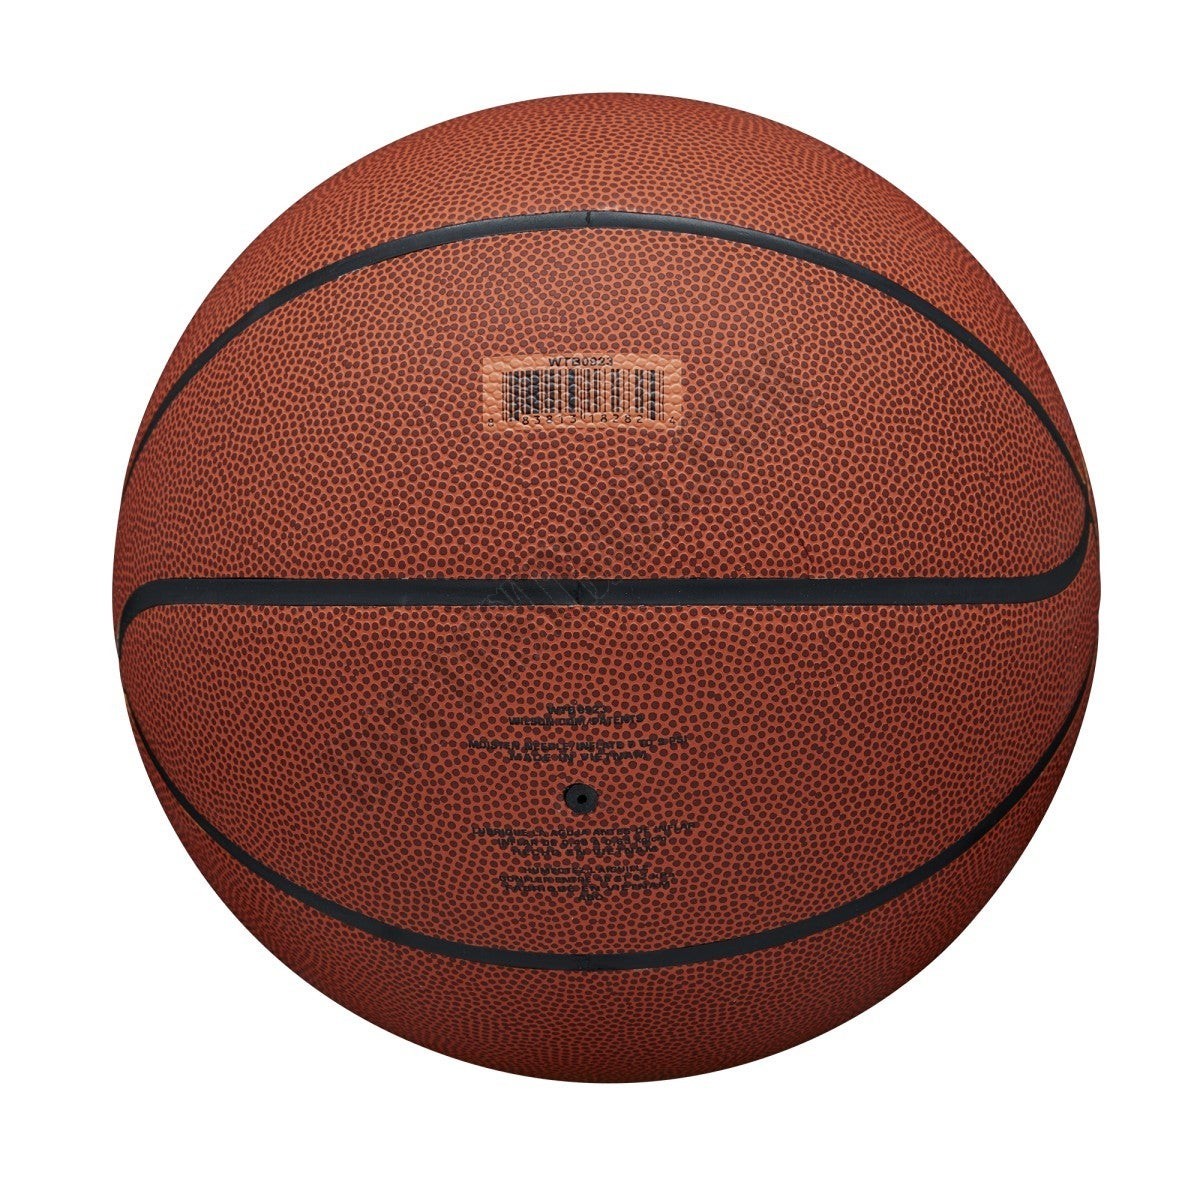 NCAA Legend Basketball - Wilson Discount Store - -5